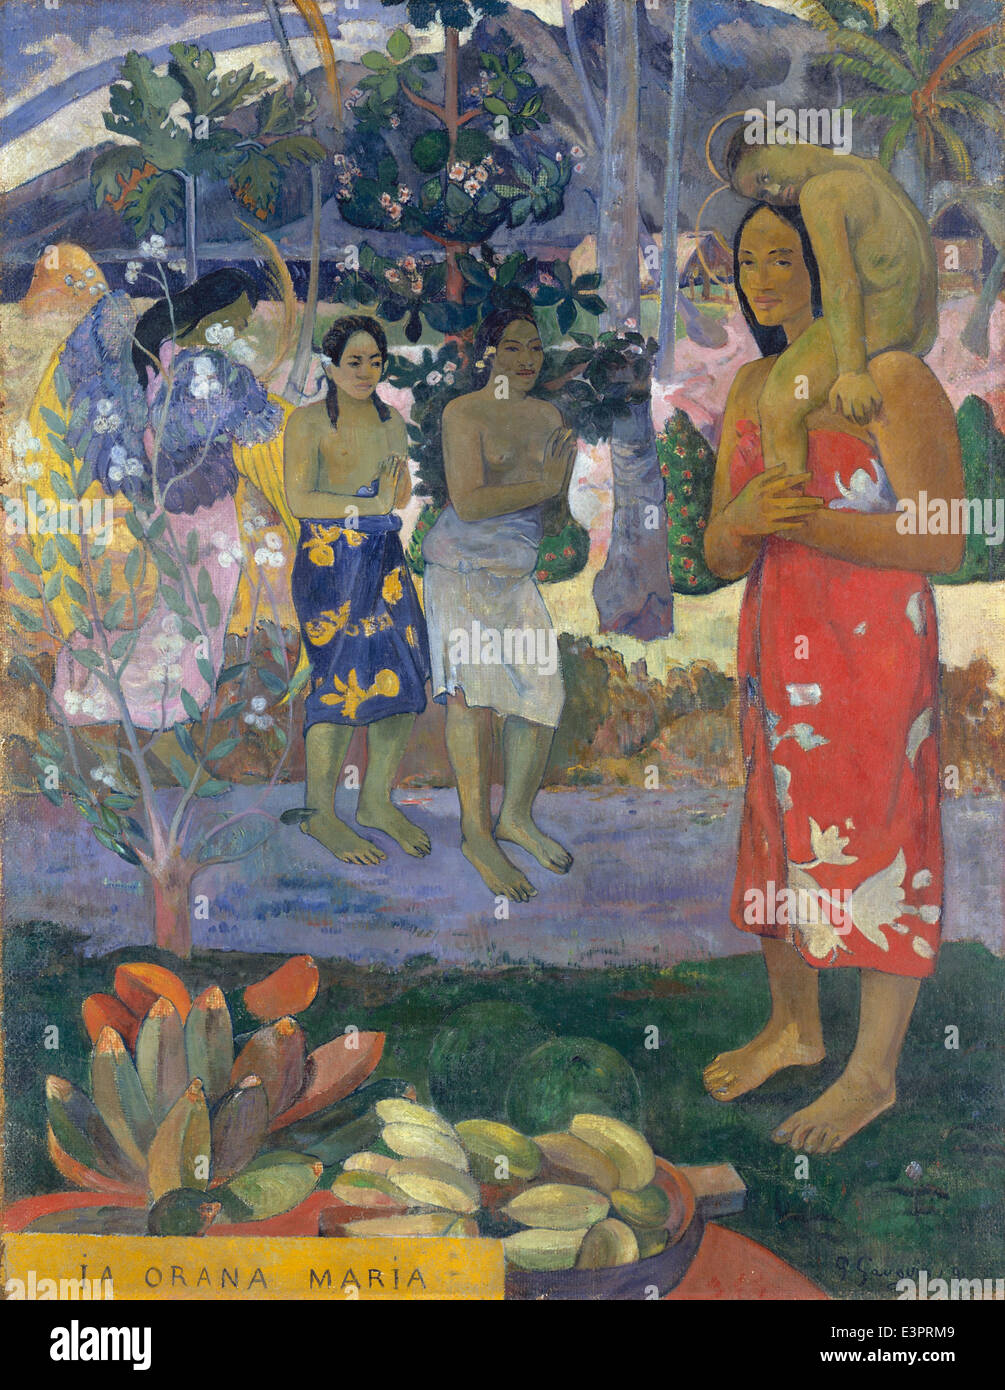 Paul Gauguin - Ia Orana Maria (Hail Mary) - 1891 Stock Photo